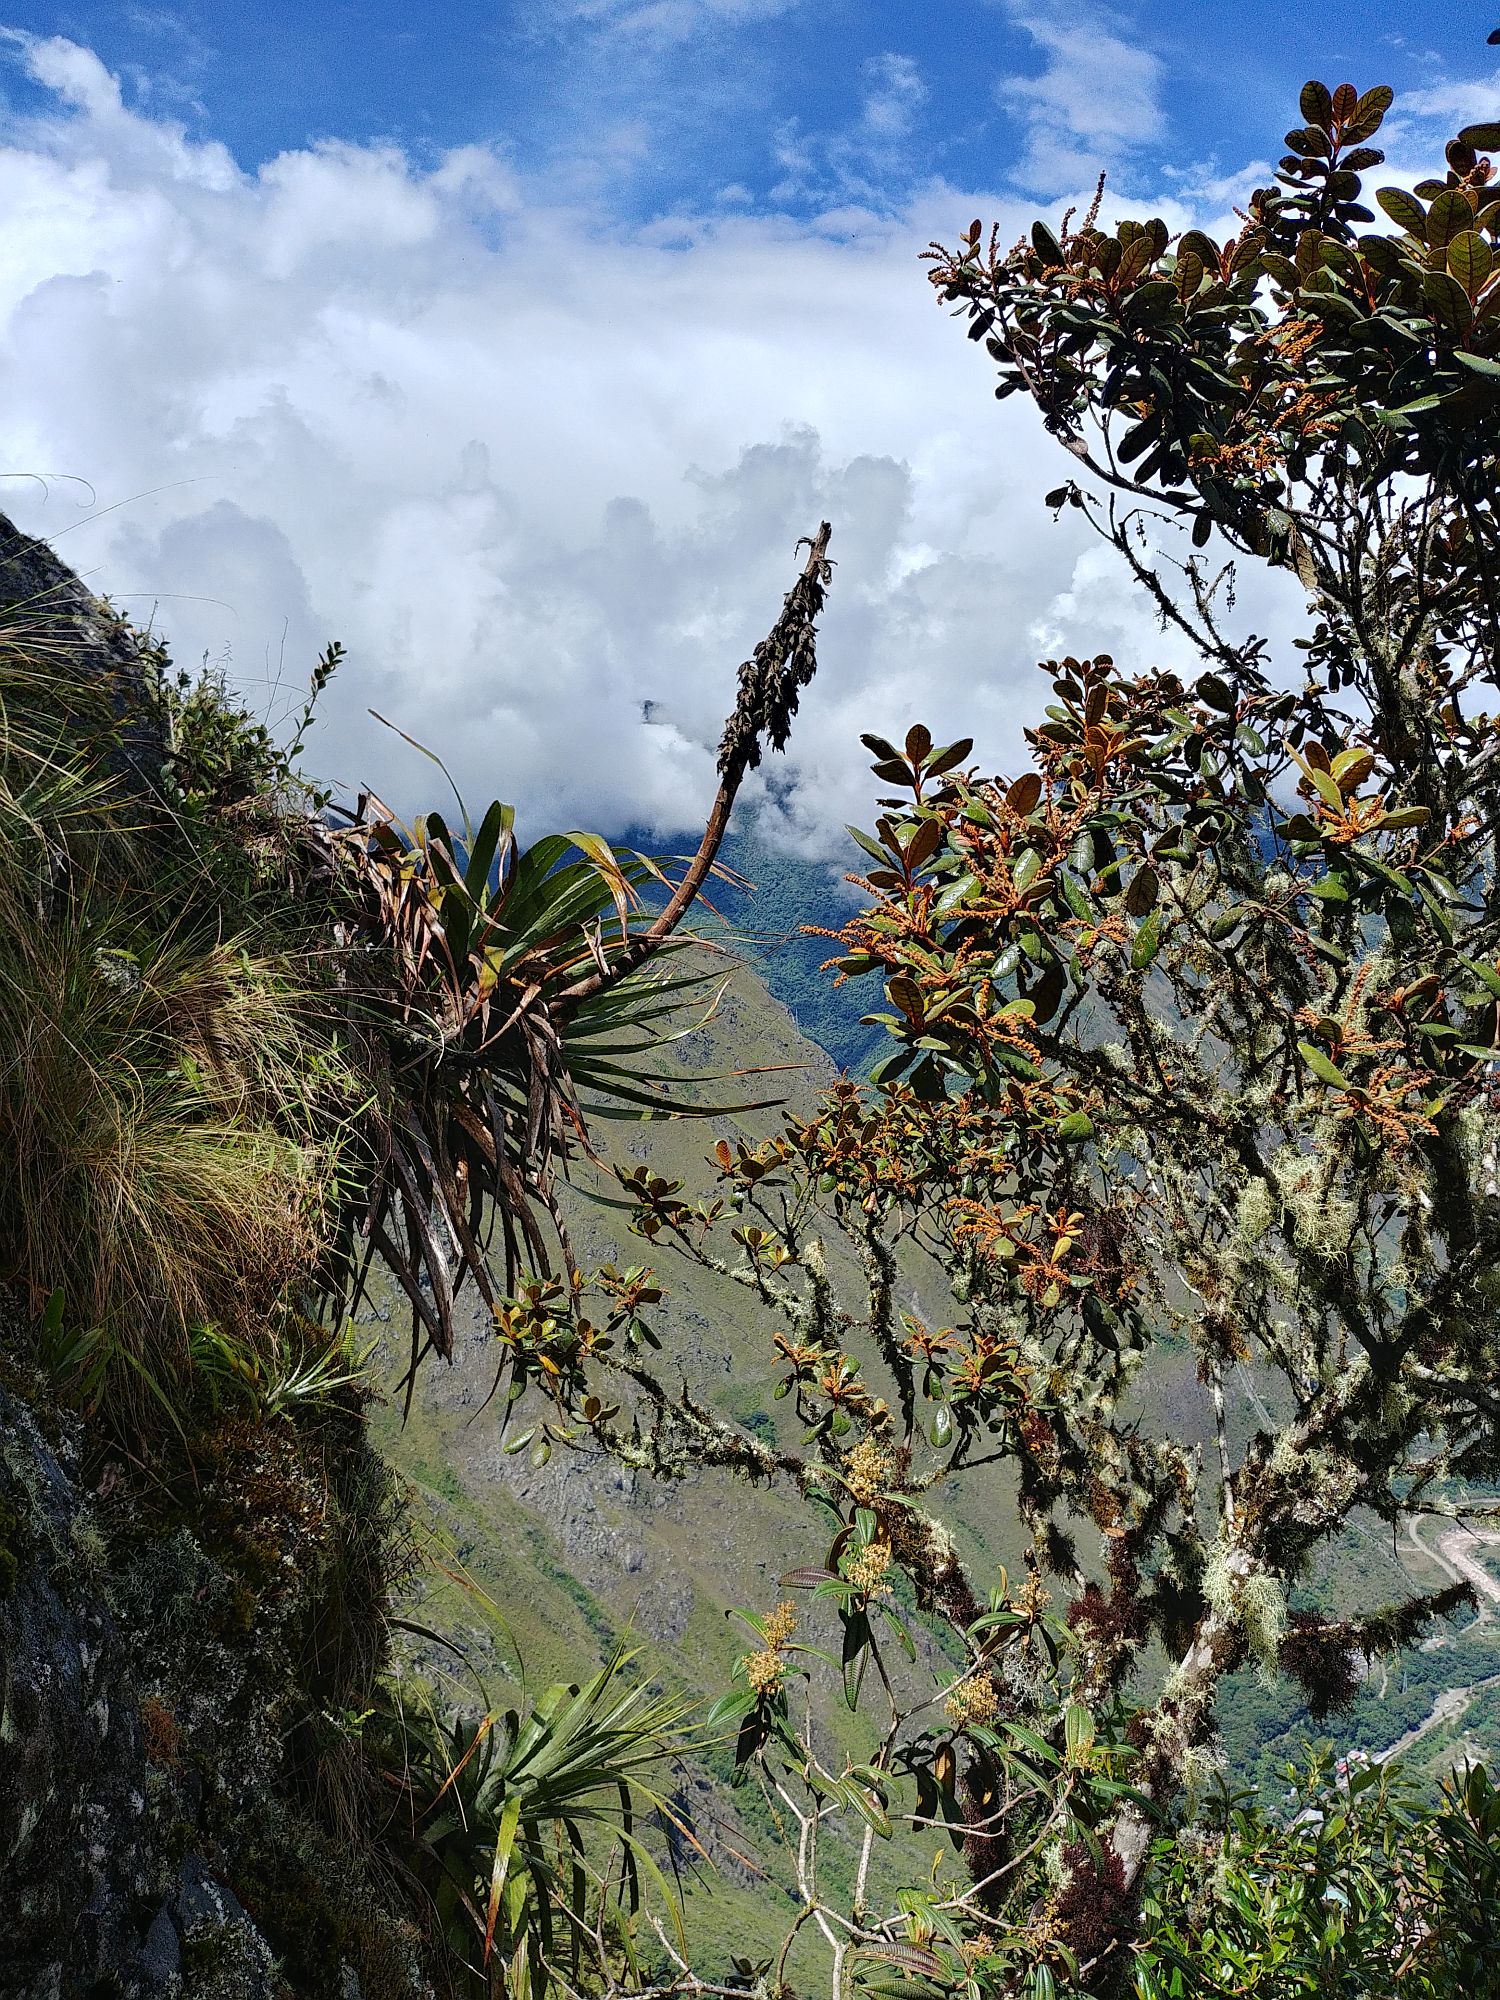 Machu Picchu 44 - On the way down